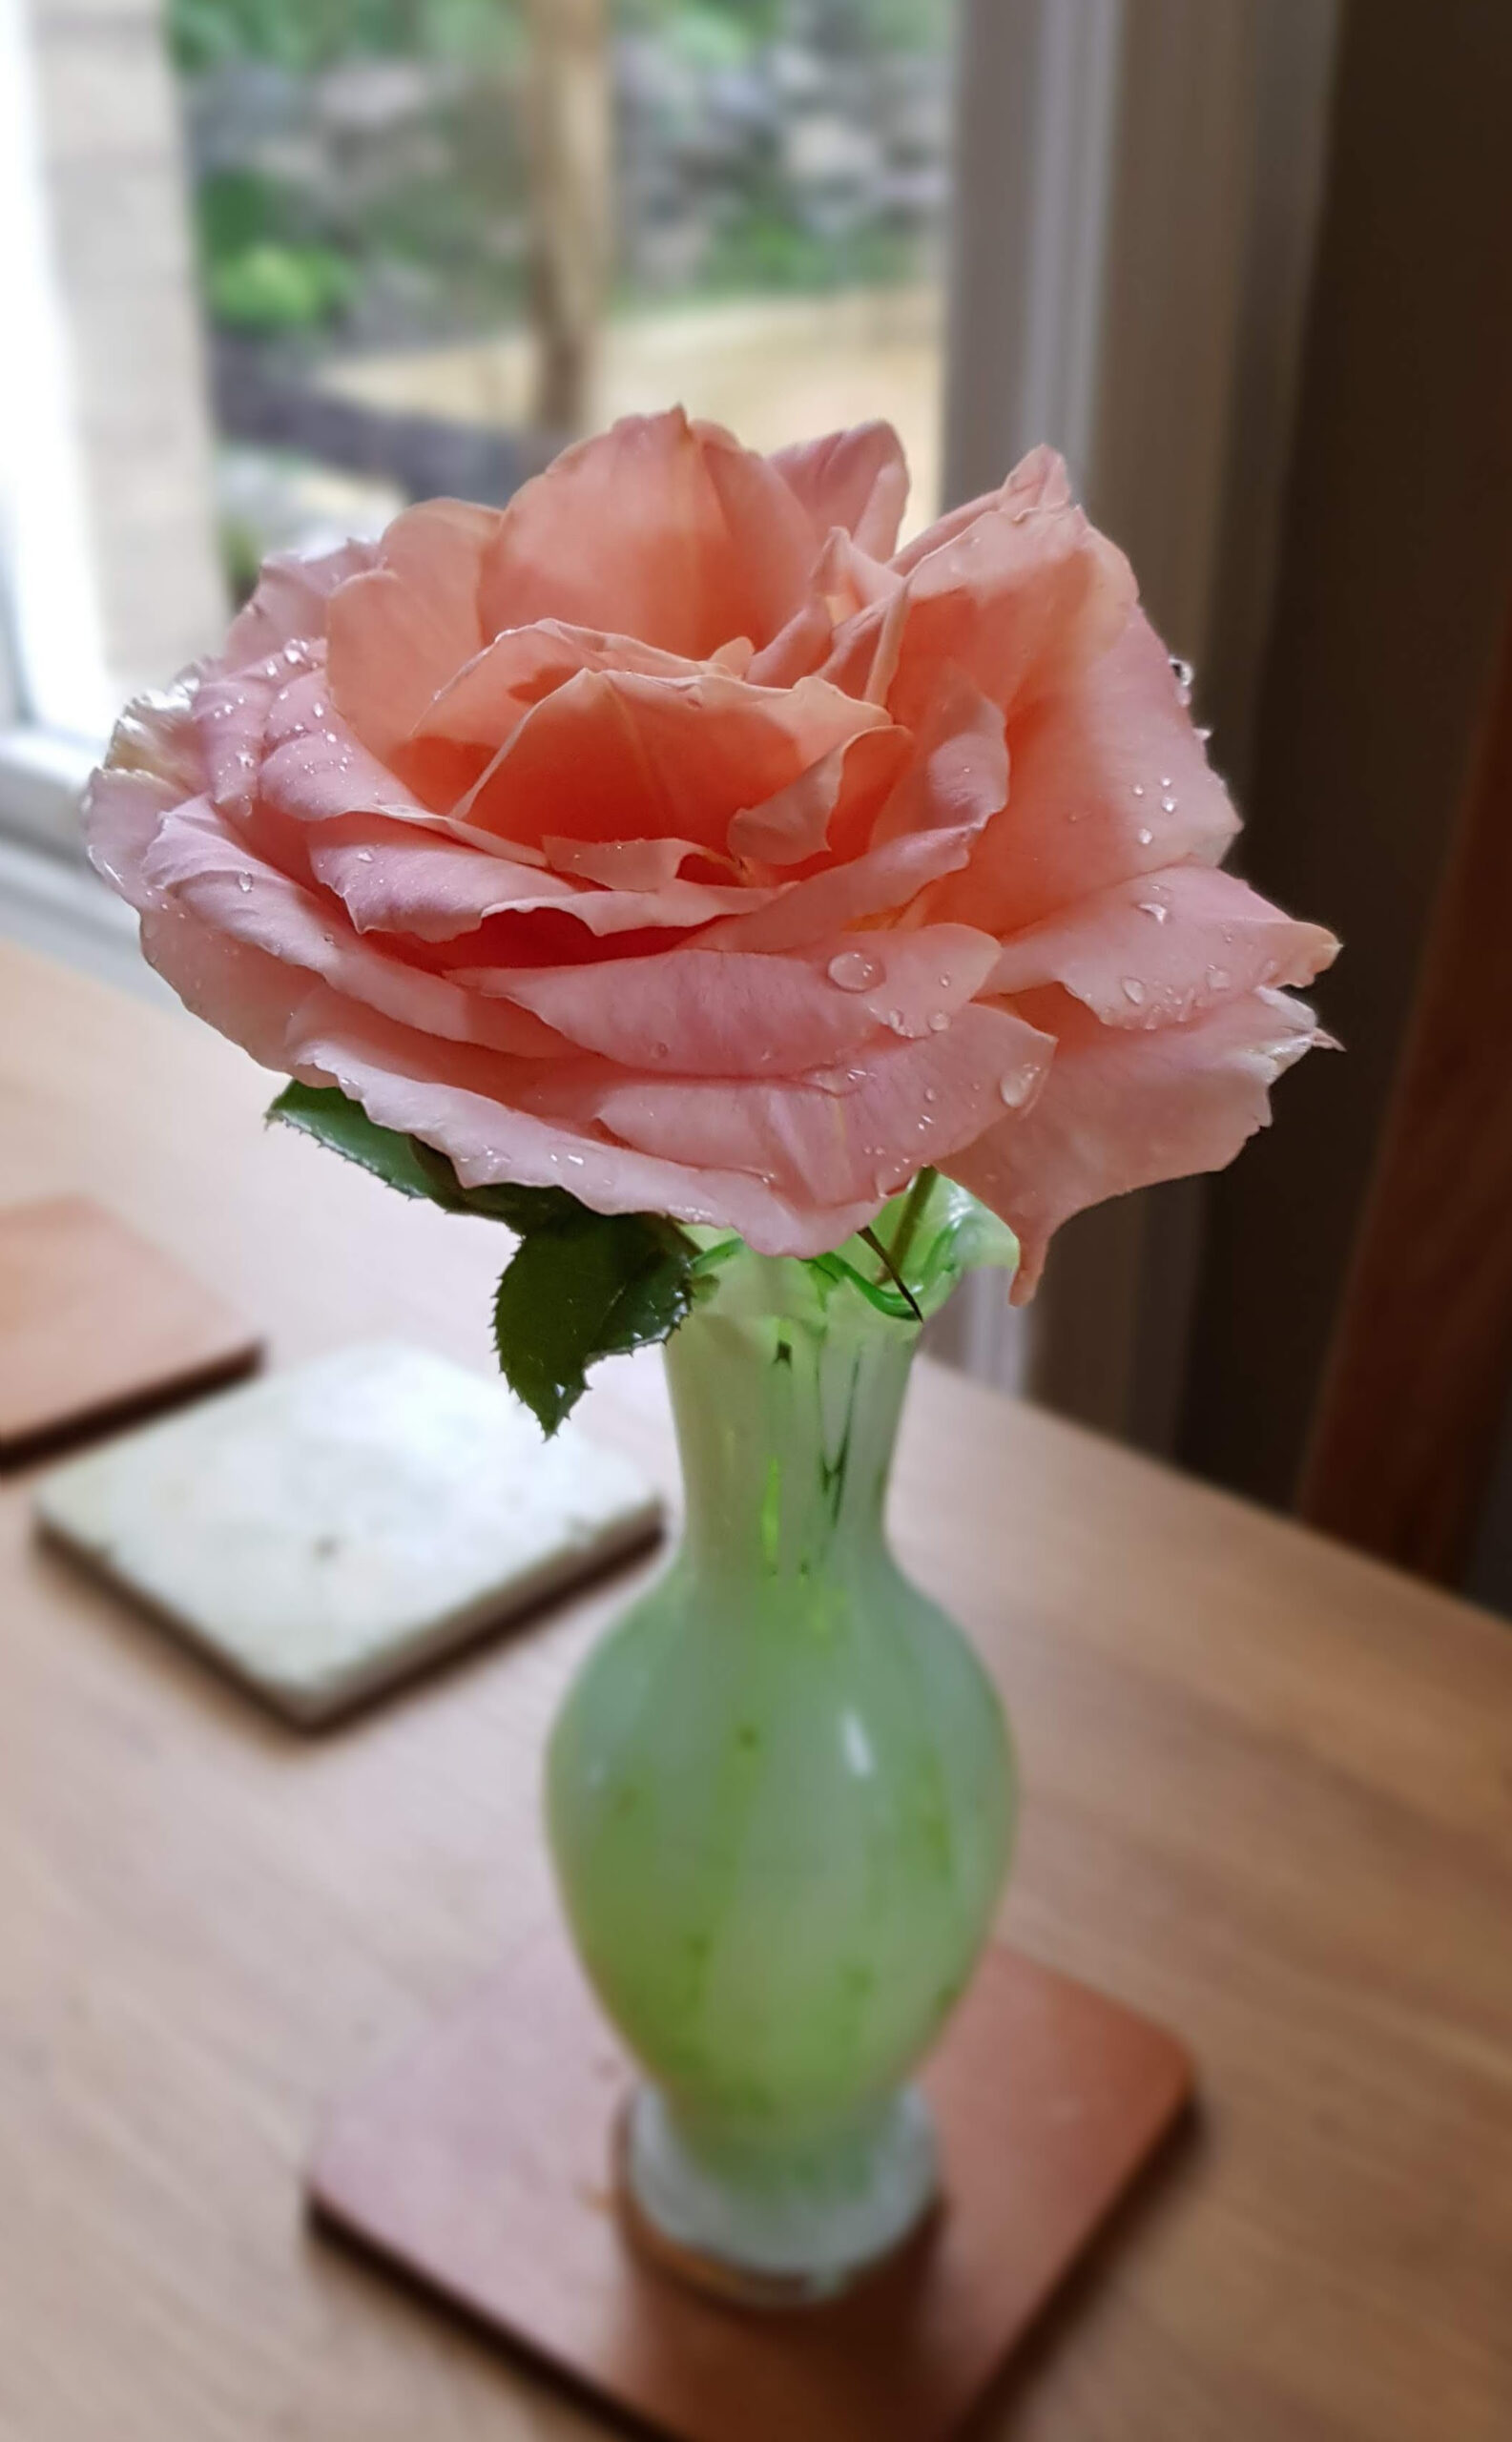 Last 'schoolgirl' rose 